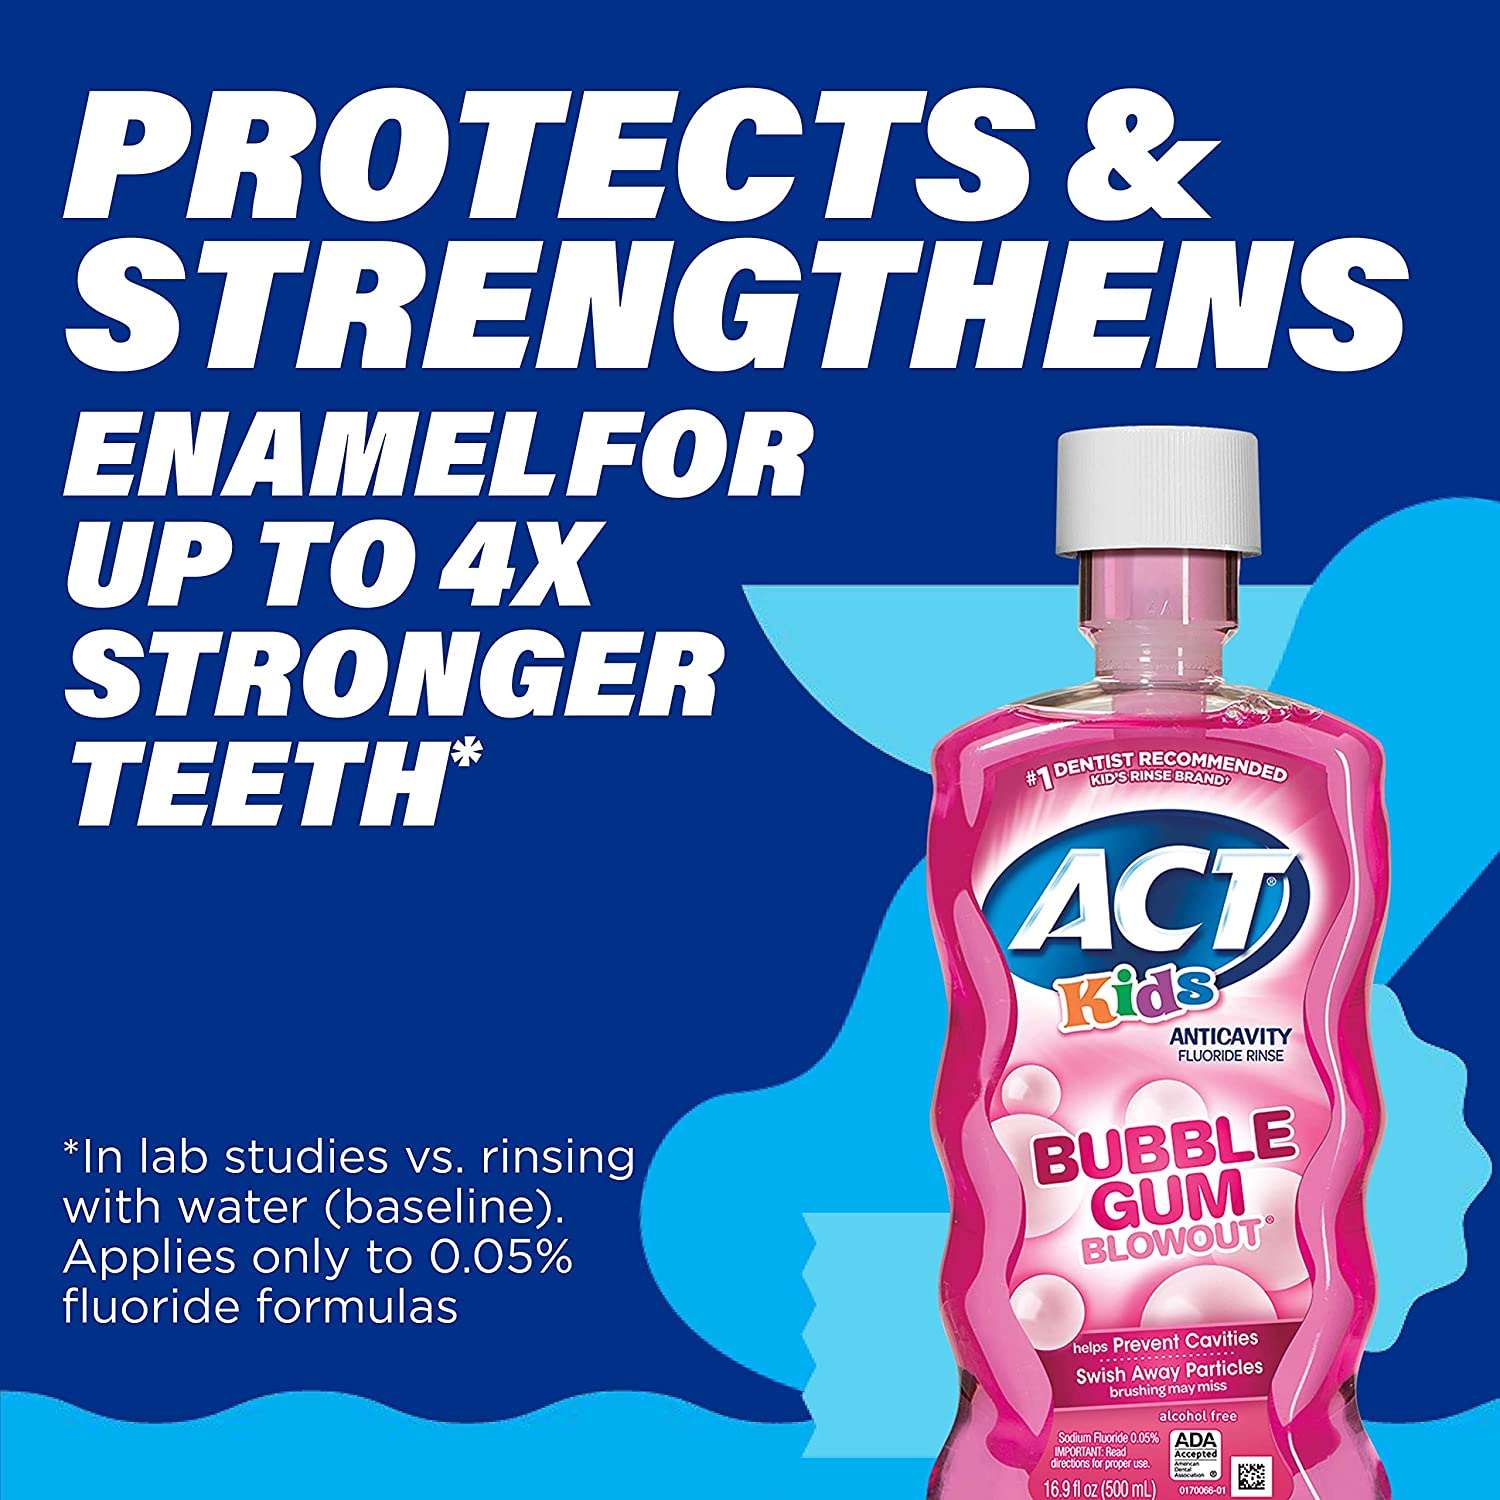 ACT Kids Anti-Cavity Fluoride Rinse, Bubblegum Blowout 16.9 oz - Hatke